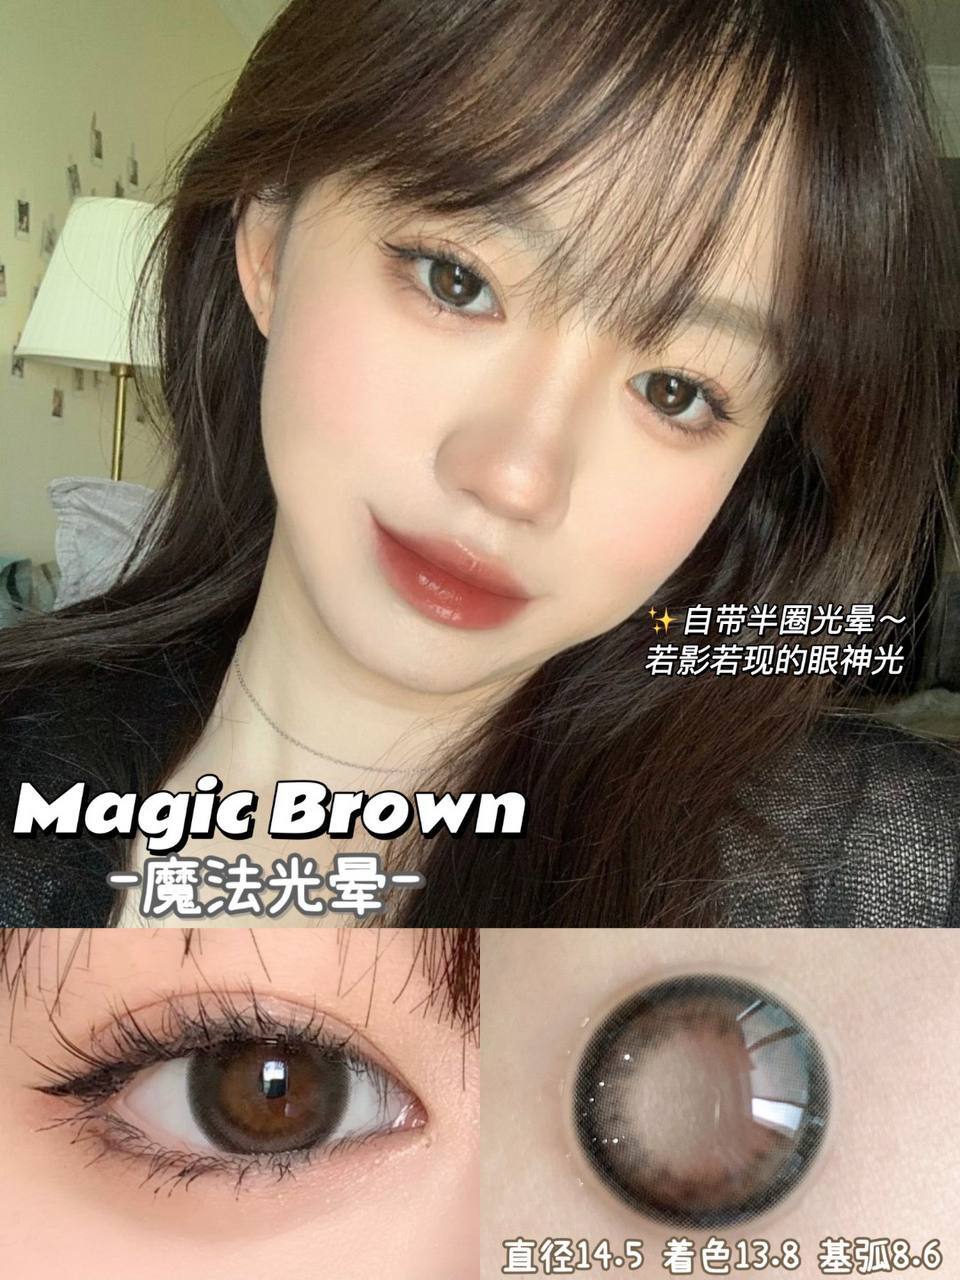 magic brown 1